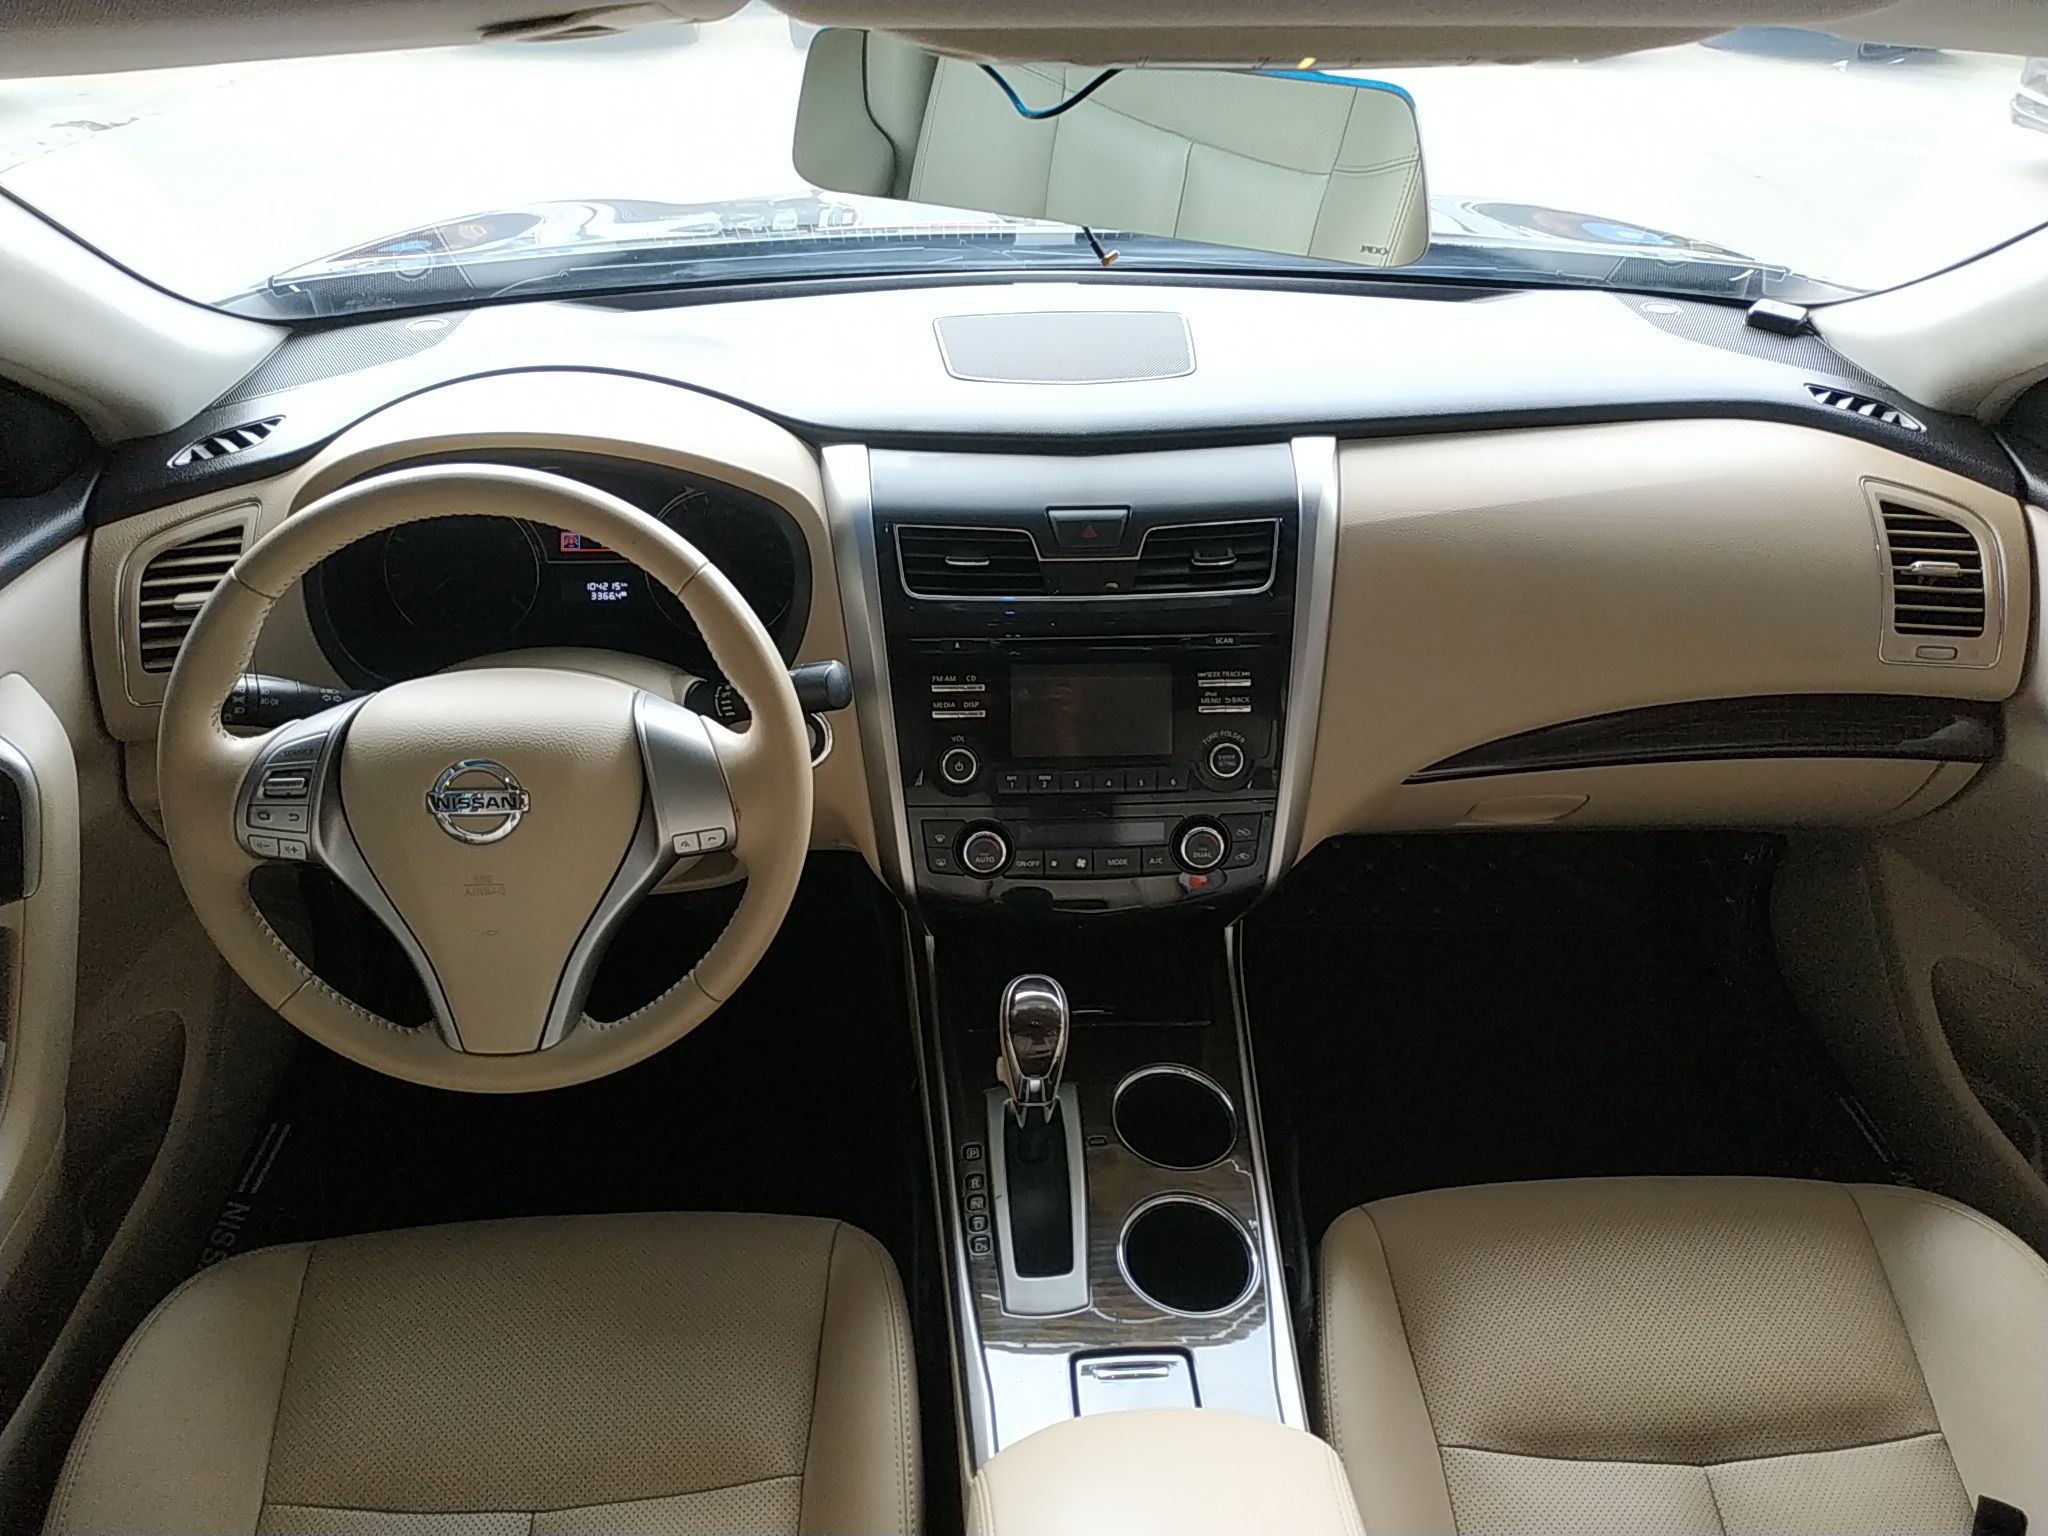 日产 天籁 2013款 2.0l xl舒适版 车辆图片